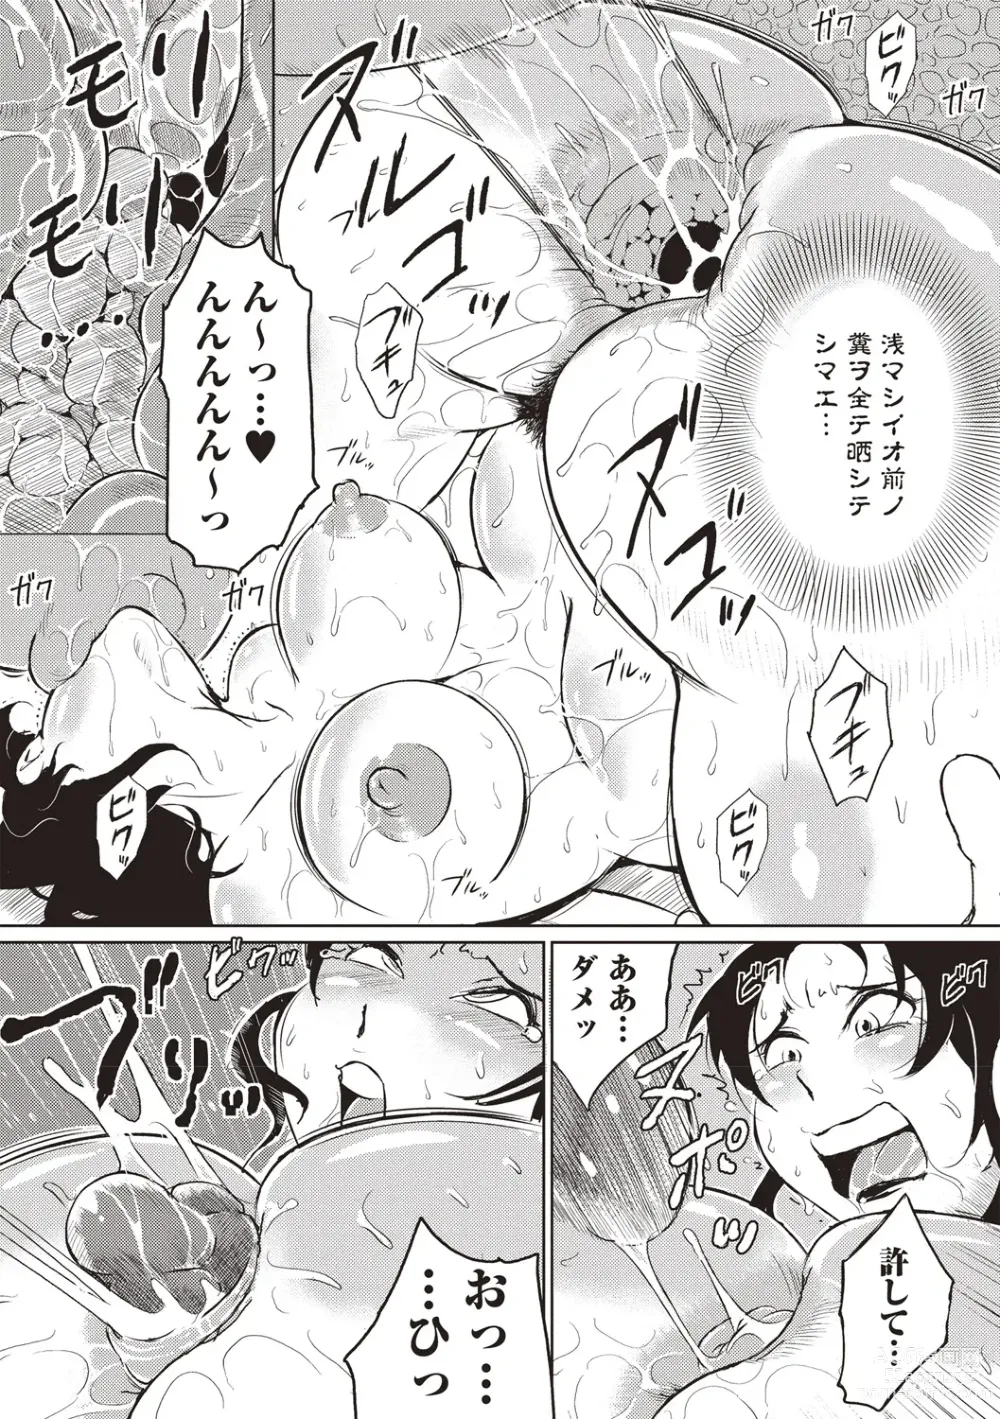 Page 214 of manga Ero BBA ♥ Dosukebe Ha Sengen